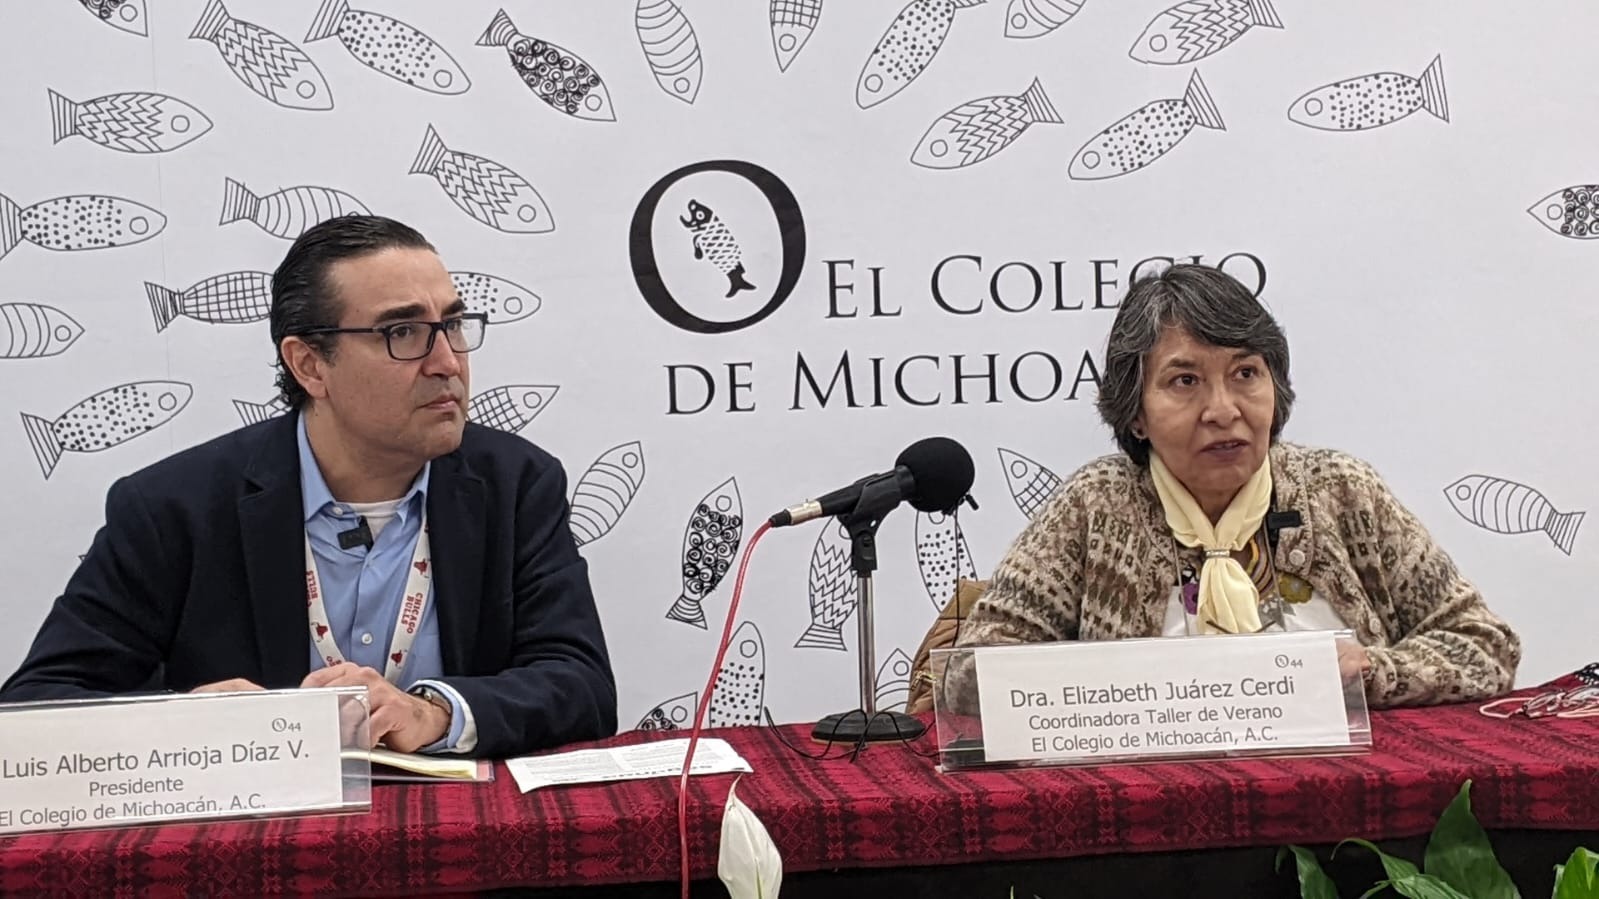 Colegio de Michoacán anuncia taller gratuito de verano para jóvenes de todo el país